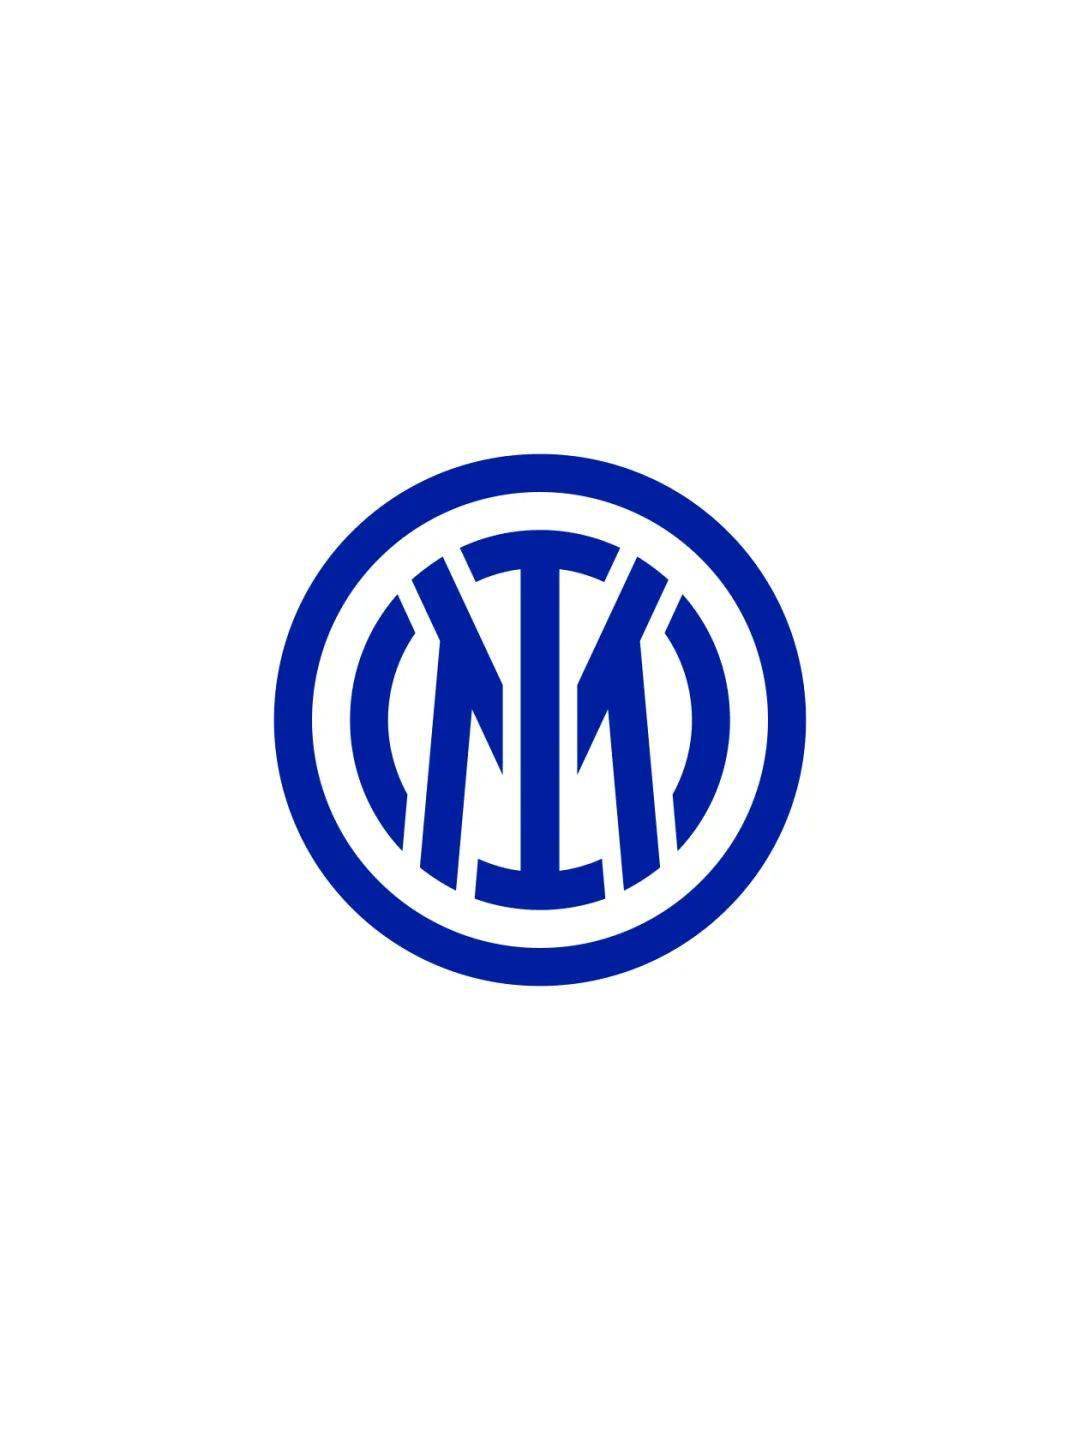 新的队徽主要围绕两个元素传递国际米兰的核心价值观